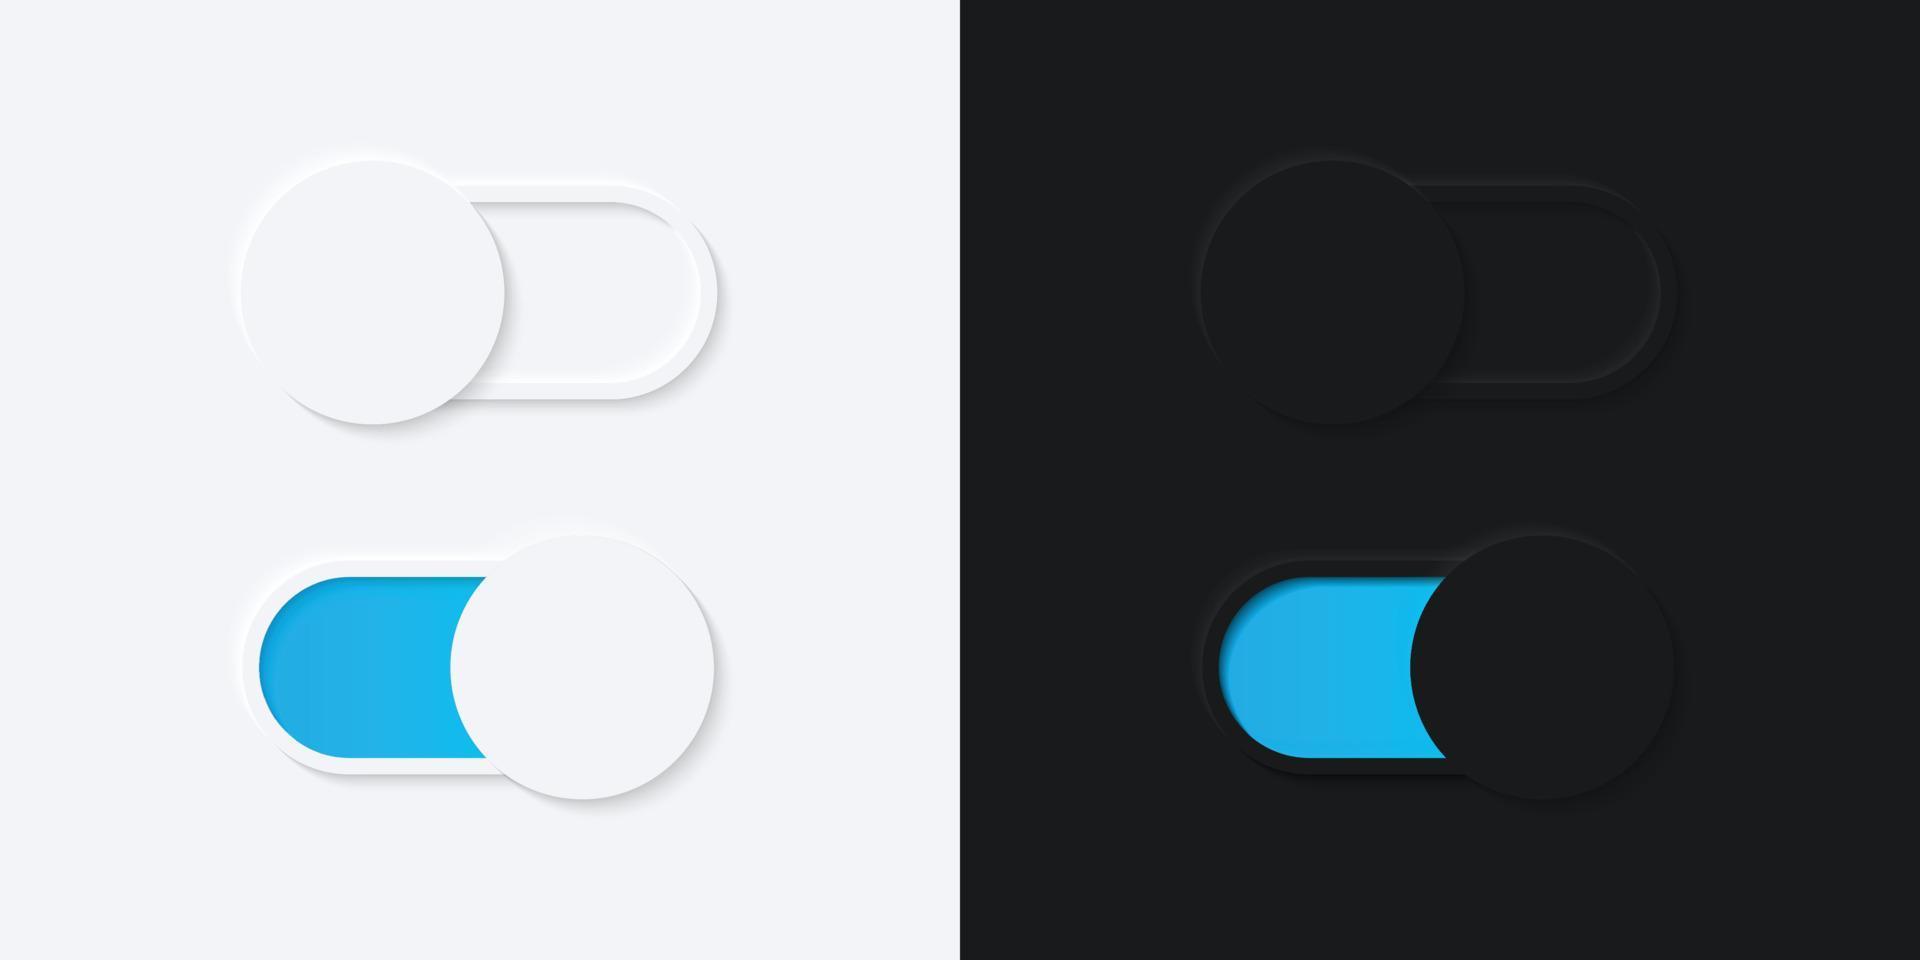 botão interruptor minimalista em design de neumorfismo. simples, moderno e elegante. interface de usuário 3D suave e suave. modo claro e modo escuro. para design de sites ou aplicativos. ilustração vetorial. vetor